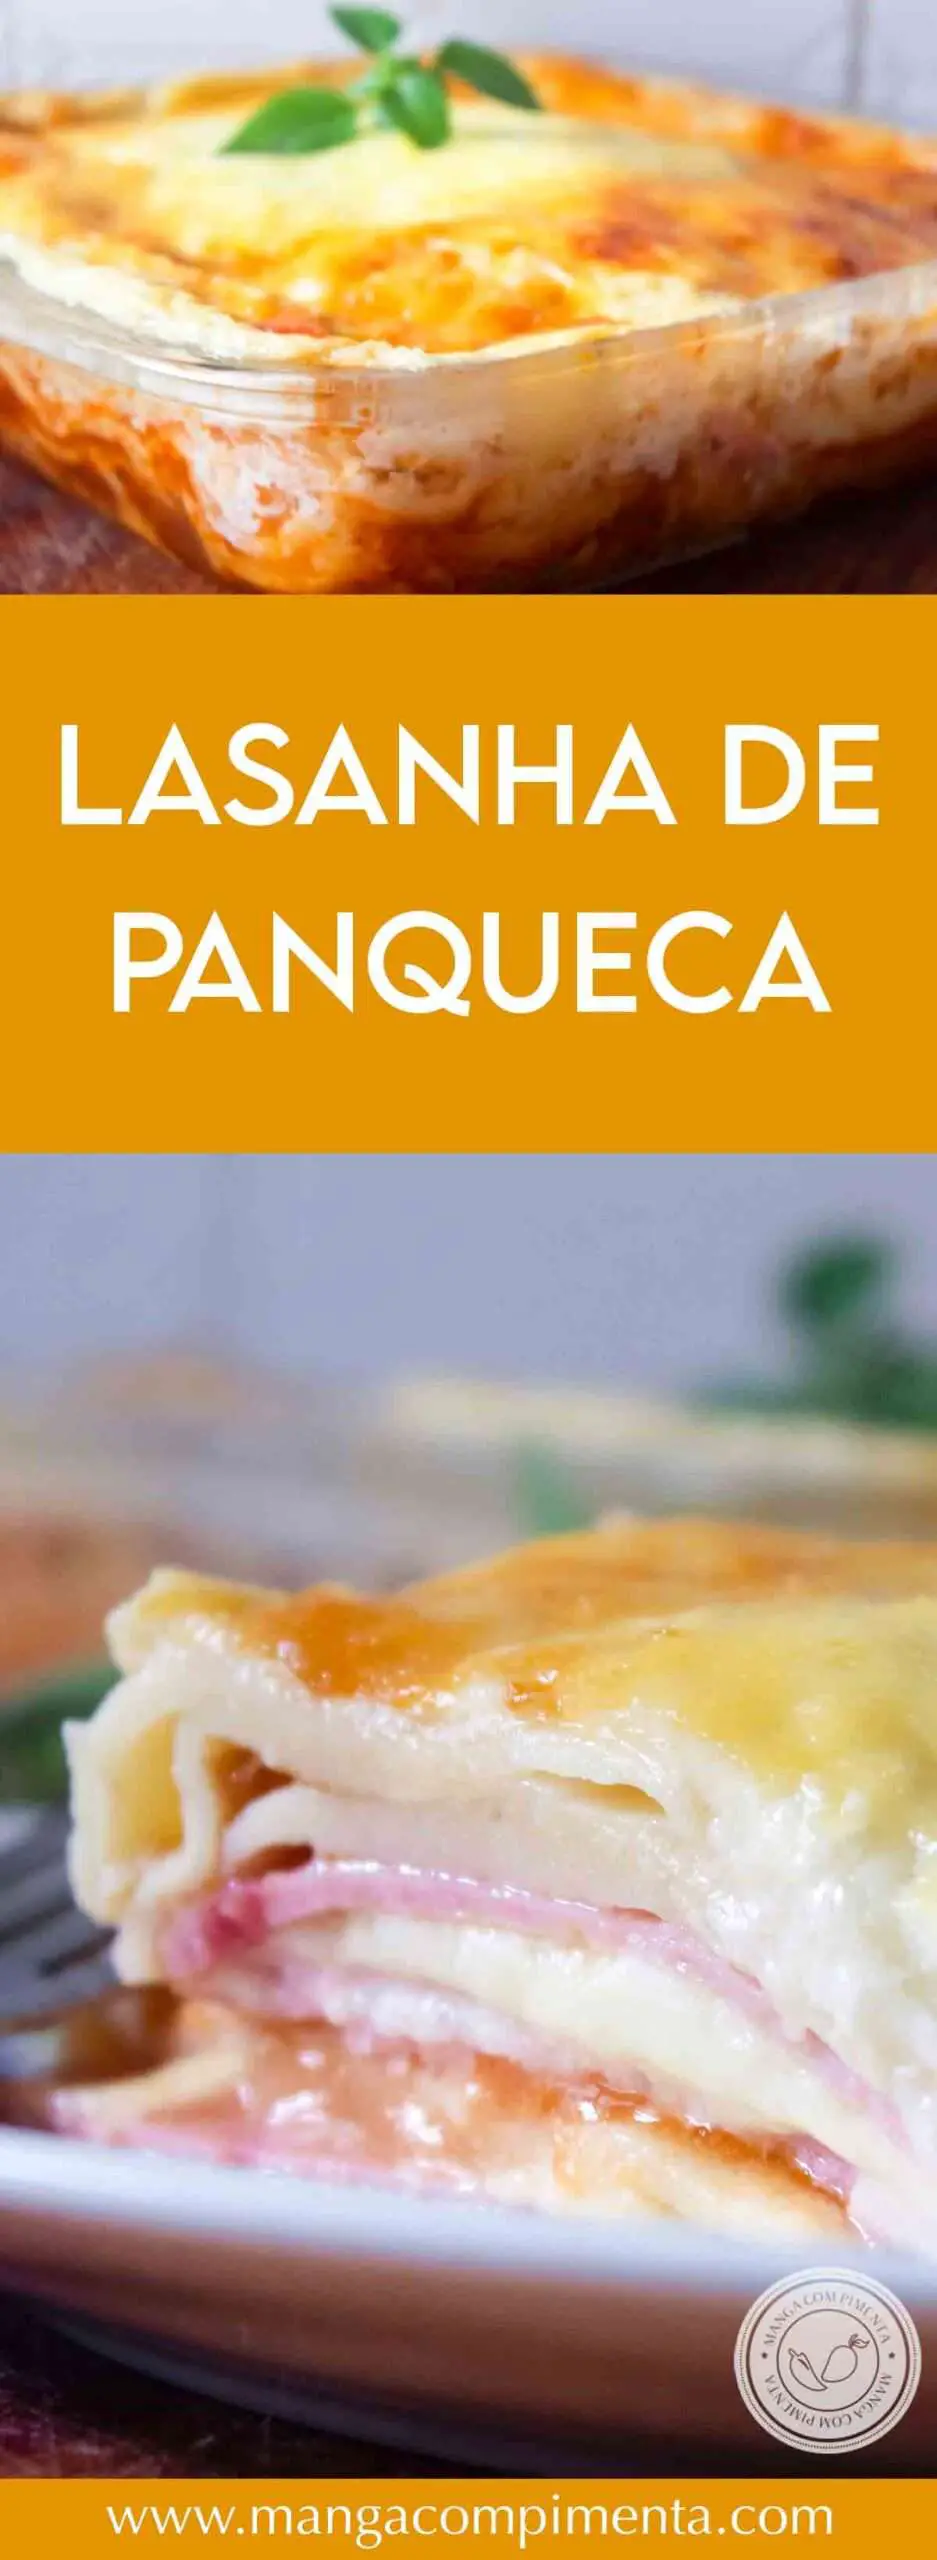 Receita de Lasanha de Panqueca - prepare para o almoço de domingo, com a família e amigos.